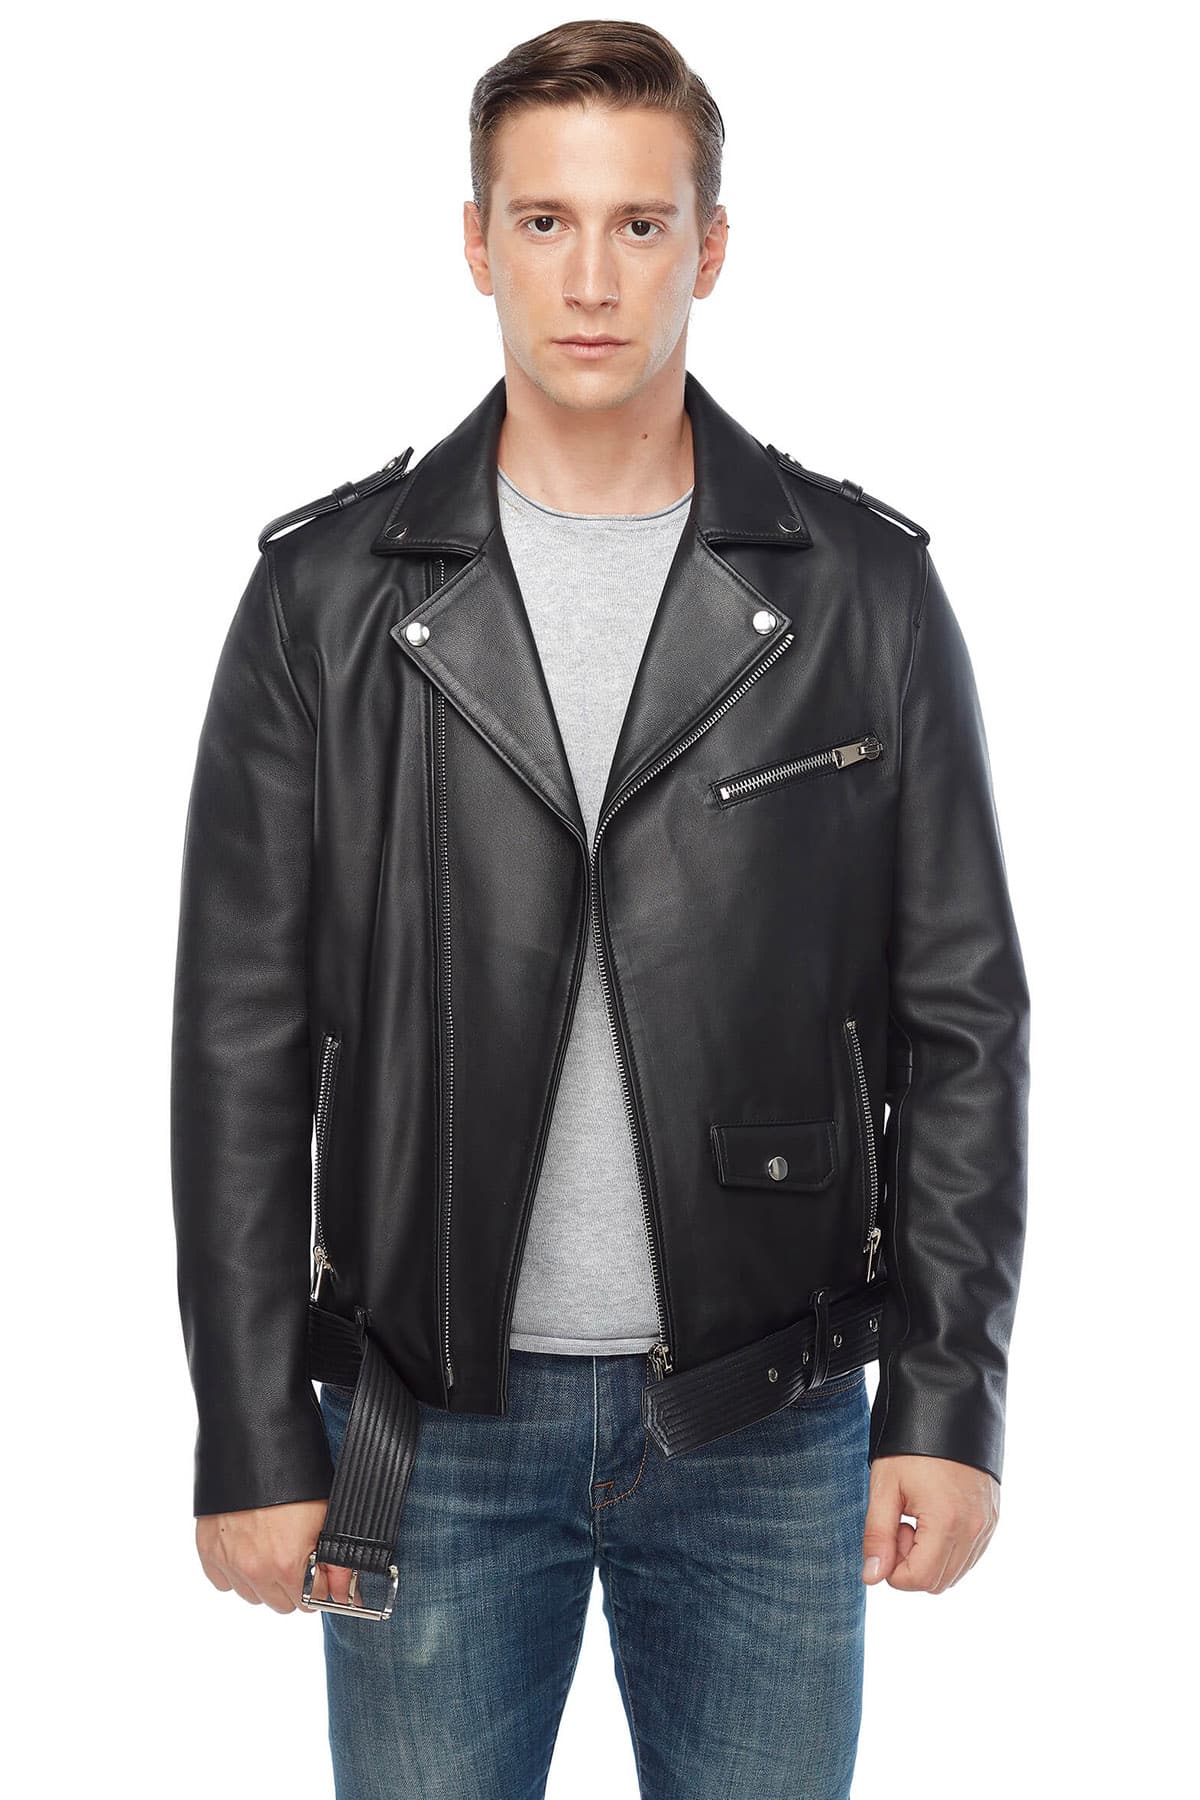 Lewis Tan Genuine Leather Biker Jacket Black